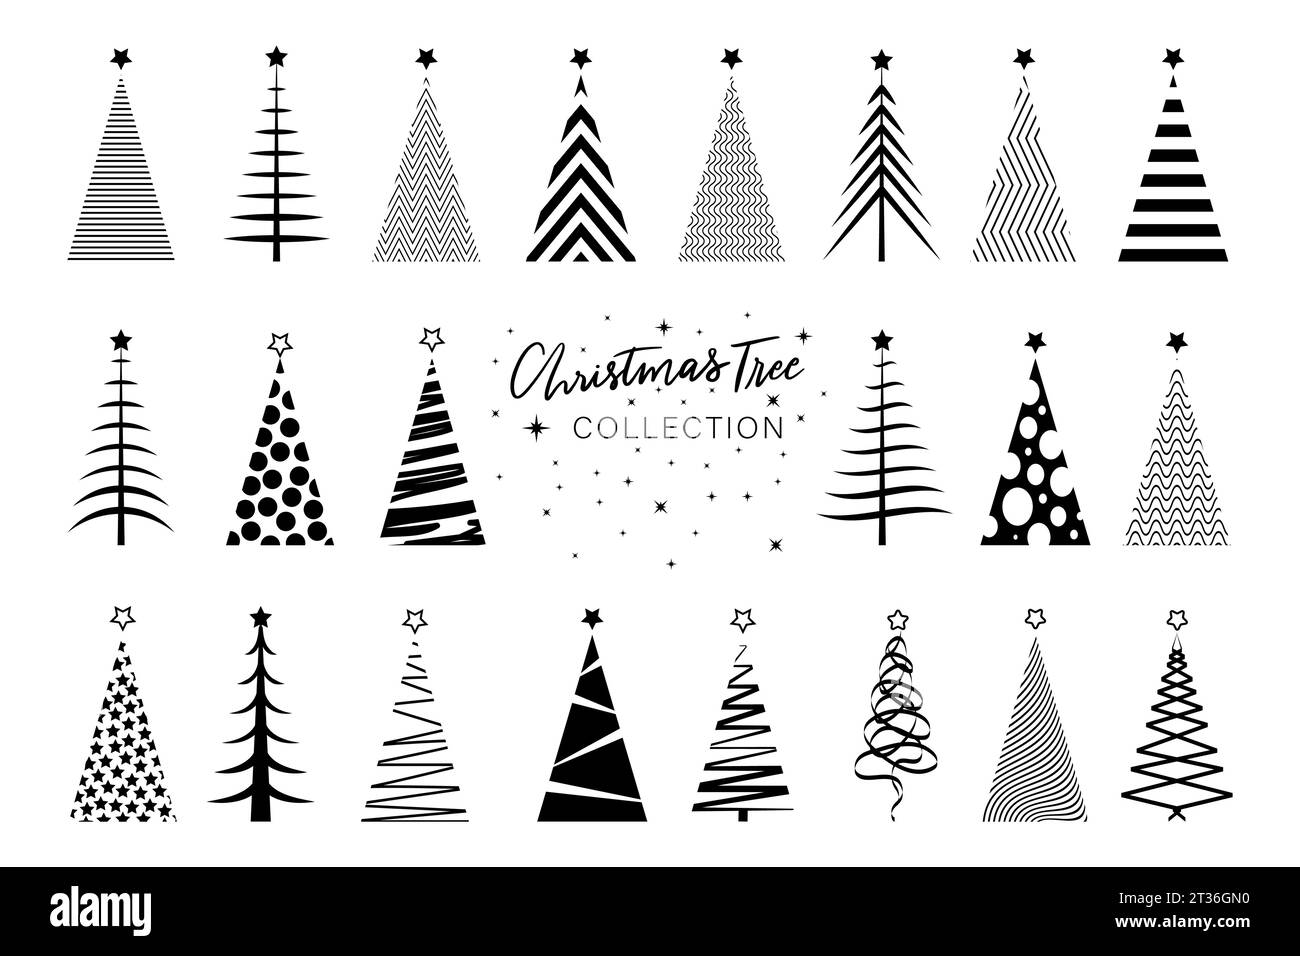 Crea il clipart albero di Natale con icone nere, stilizzate vettoriali buon Natale, inviti per le vacanze invernali a tema natalizio con simbolo geometrico Illustrazione Vettoriale